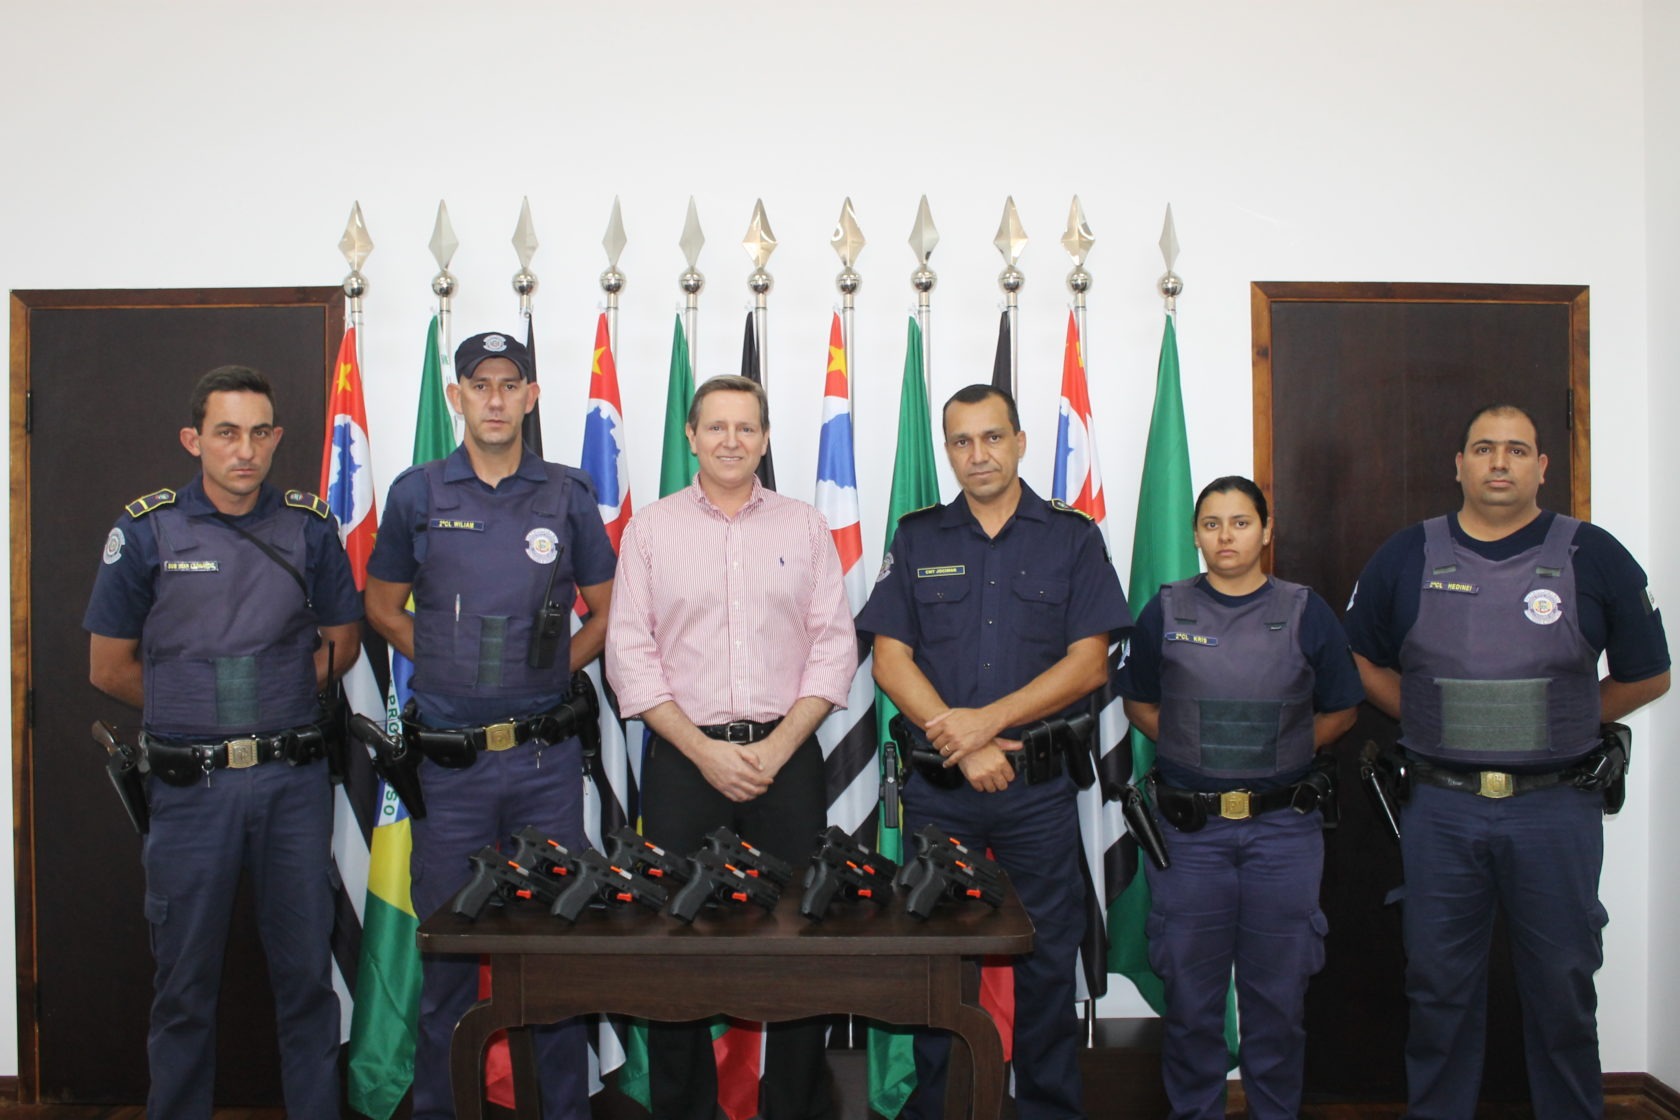 Inédito: com recursos próprios, prefeito de Itararé (SP) adquire 10 armas novas para a GCM